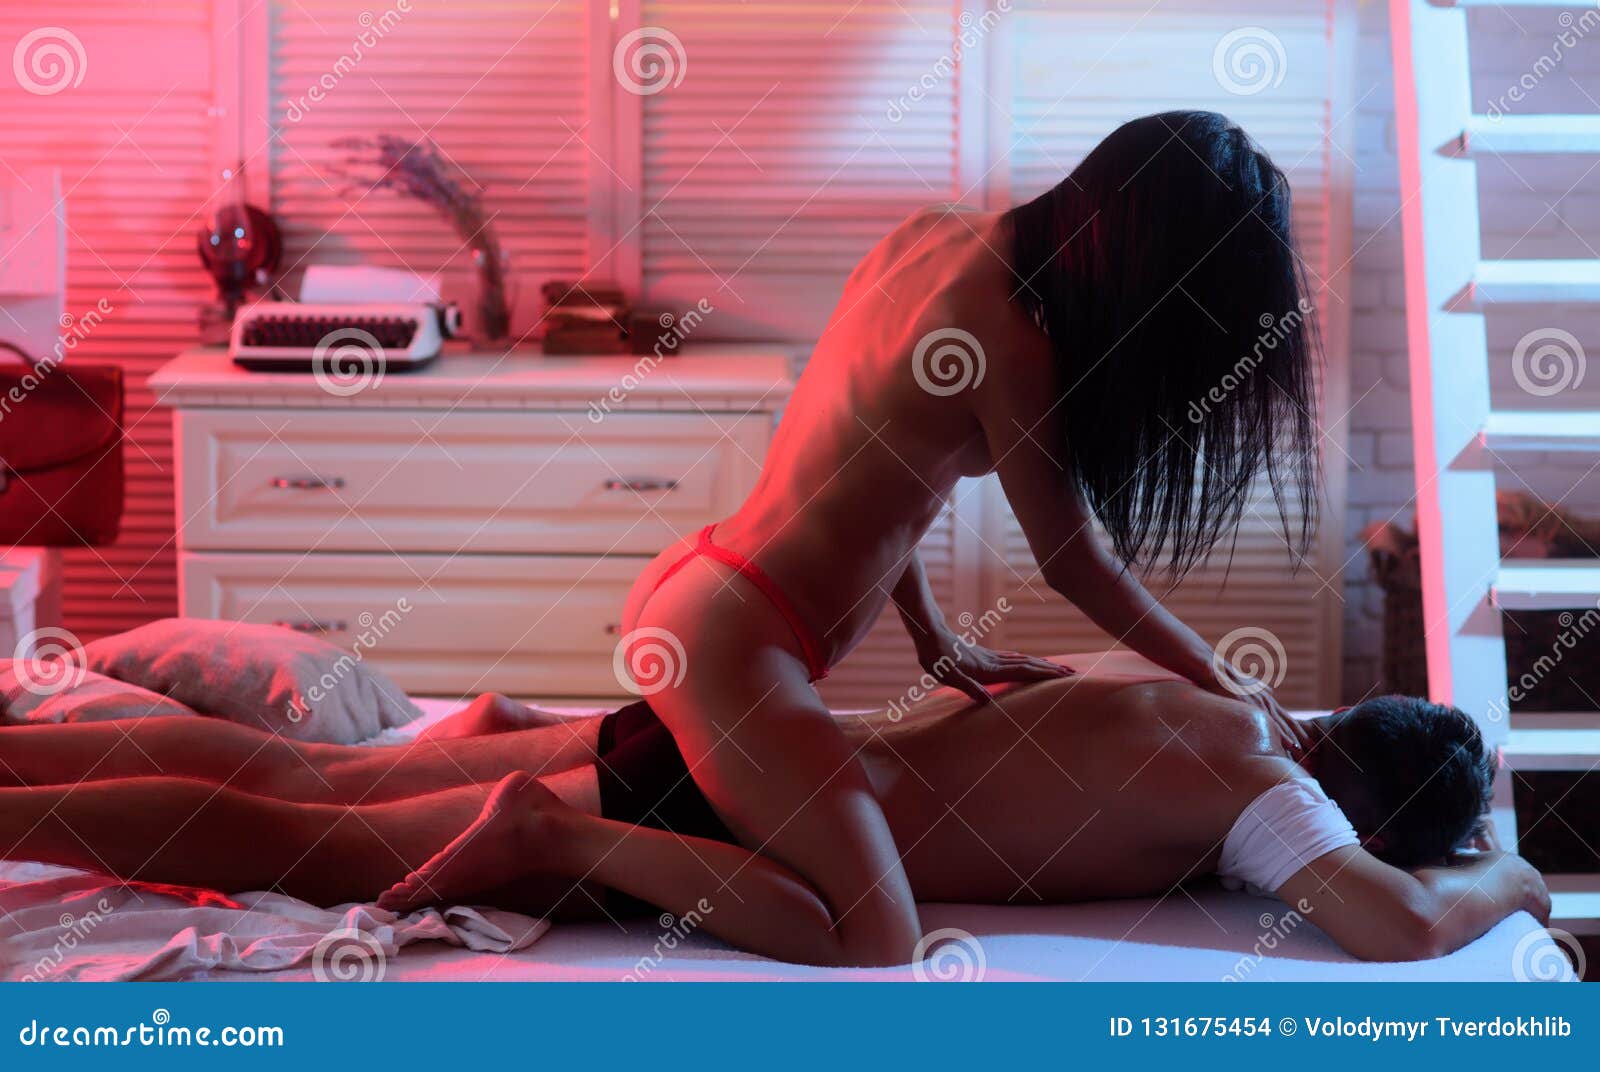 Women Massage Sex